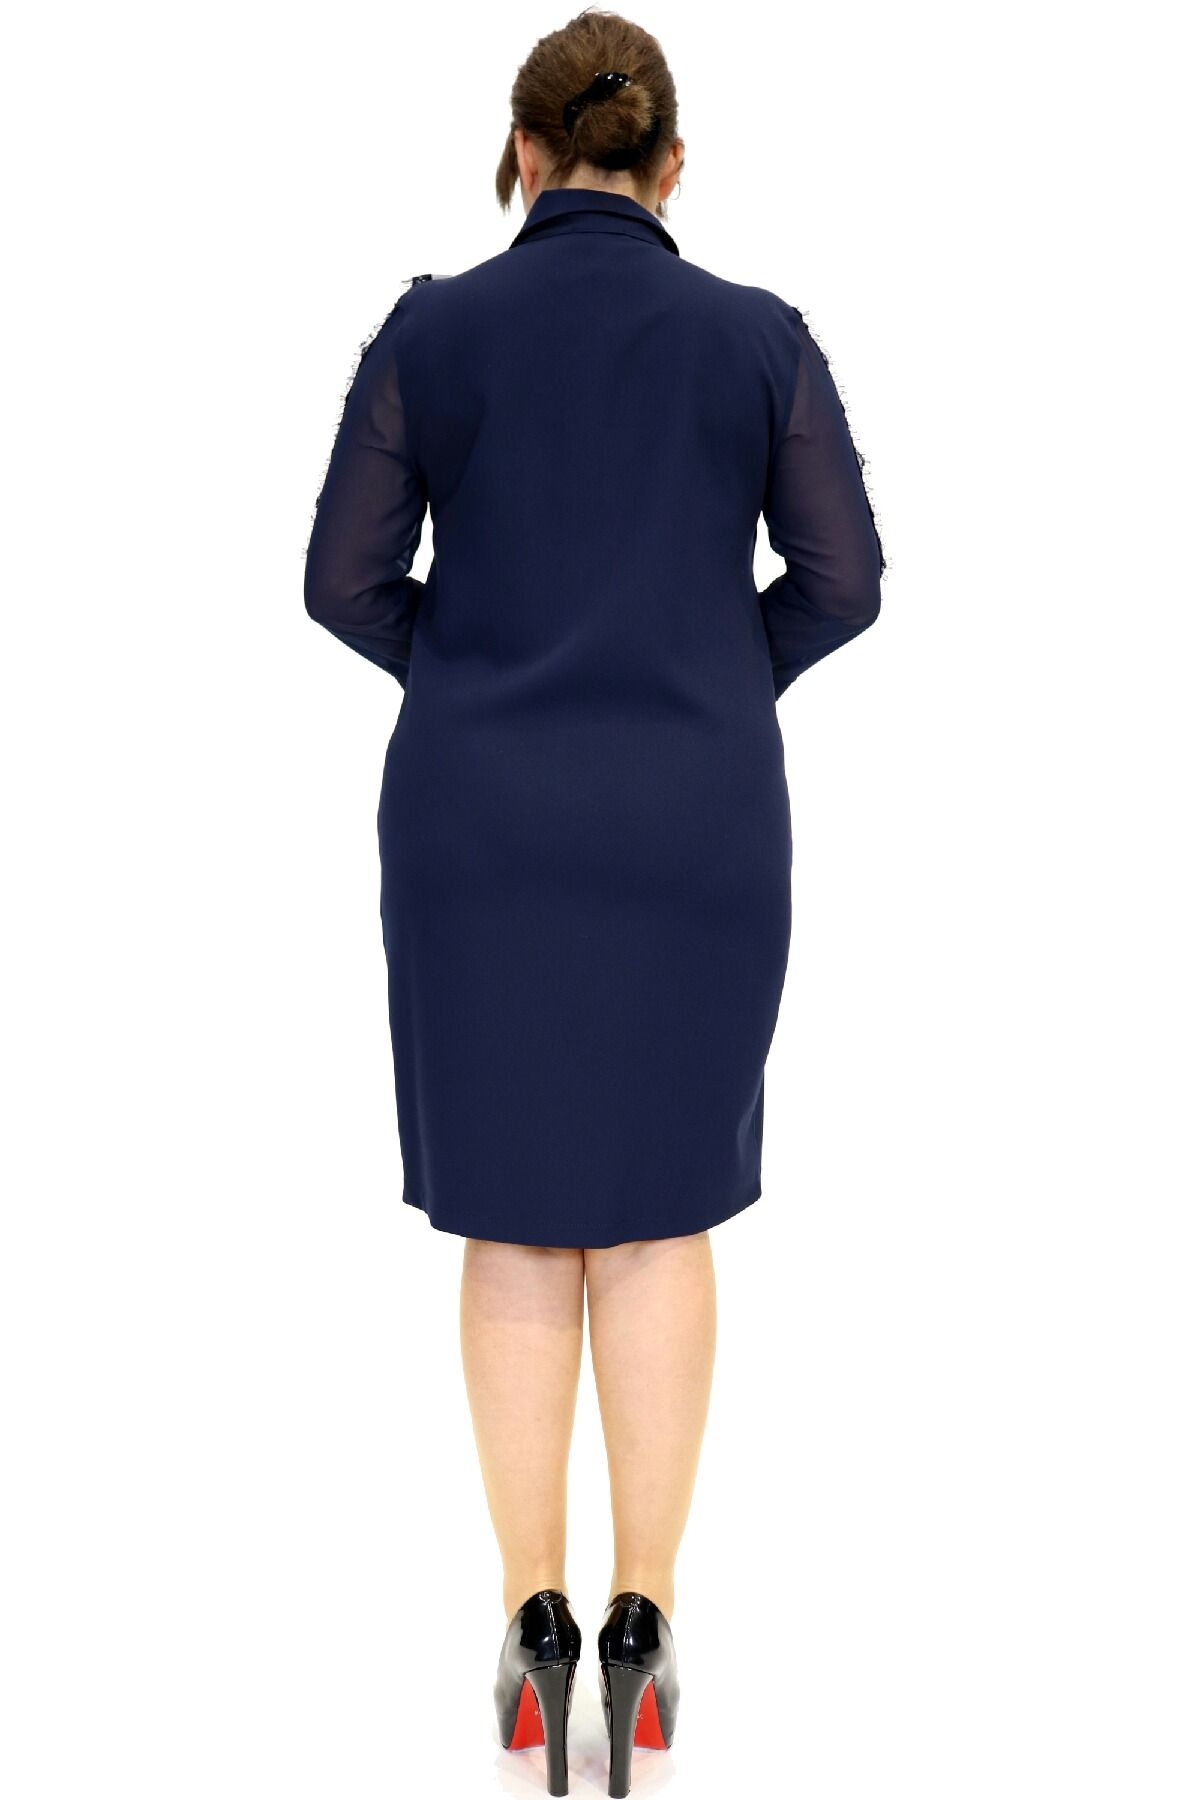 فستان بقياس مستقيم مع ياقة وأكمام طويلة مع جيوب مزركشة من الحجر.